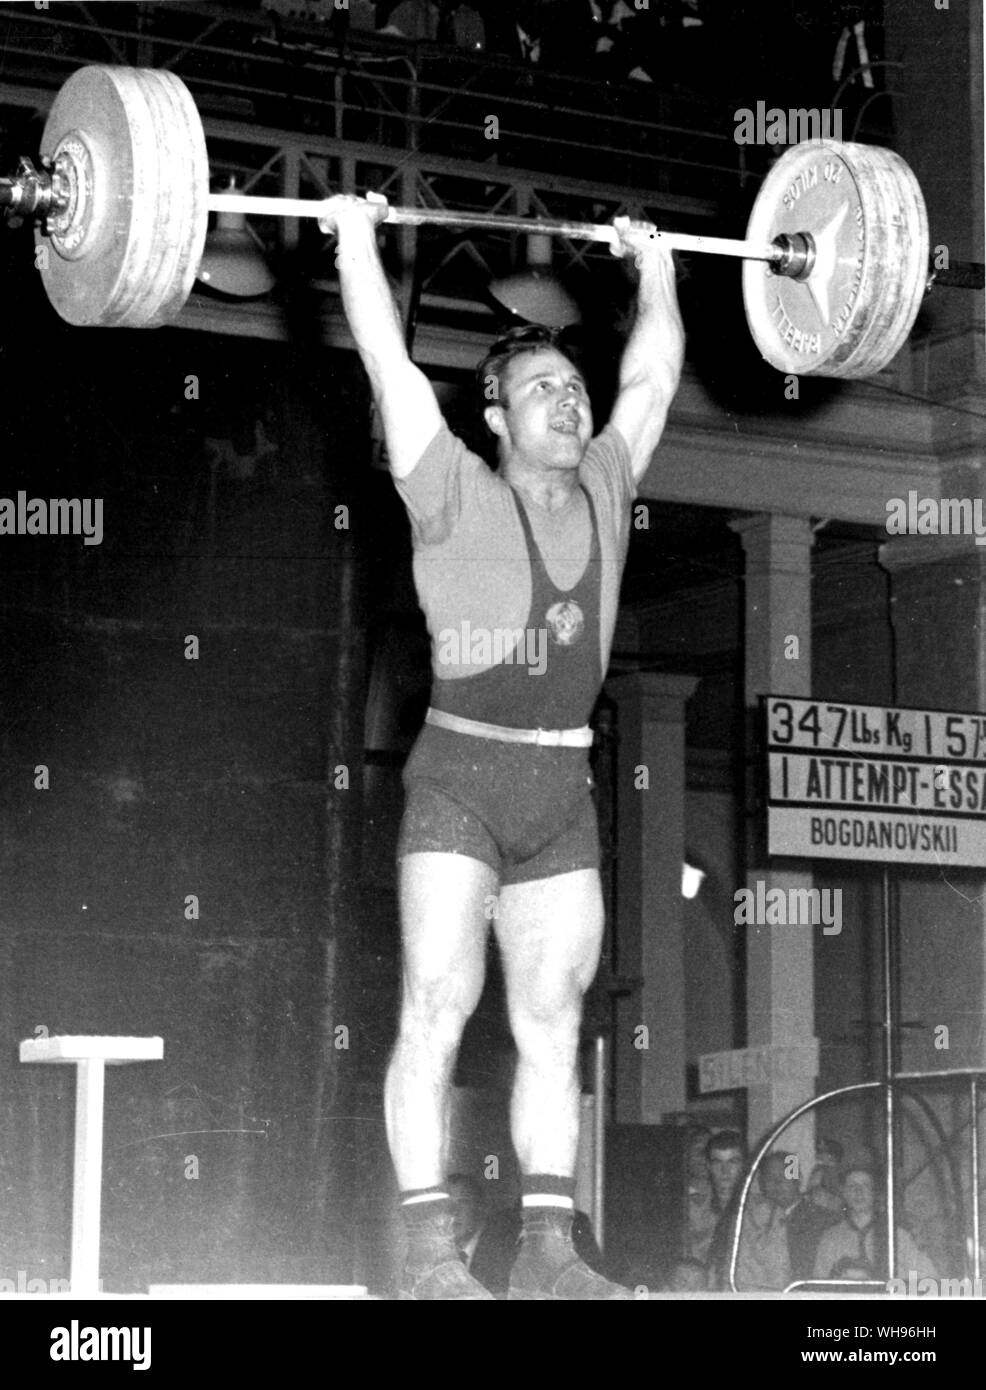 Aus., Melbourne, Olympics, 1956: Russlands Fedor Bogdanovski zuckt 157,5 kg im Mittelgewicht weightlifting Wettbewerb. Er gewann den Wettbewerb mit insgesamt 420 kg. Stockfoto